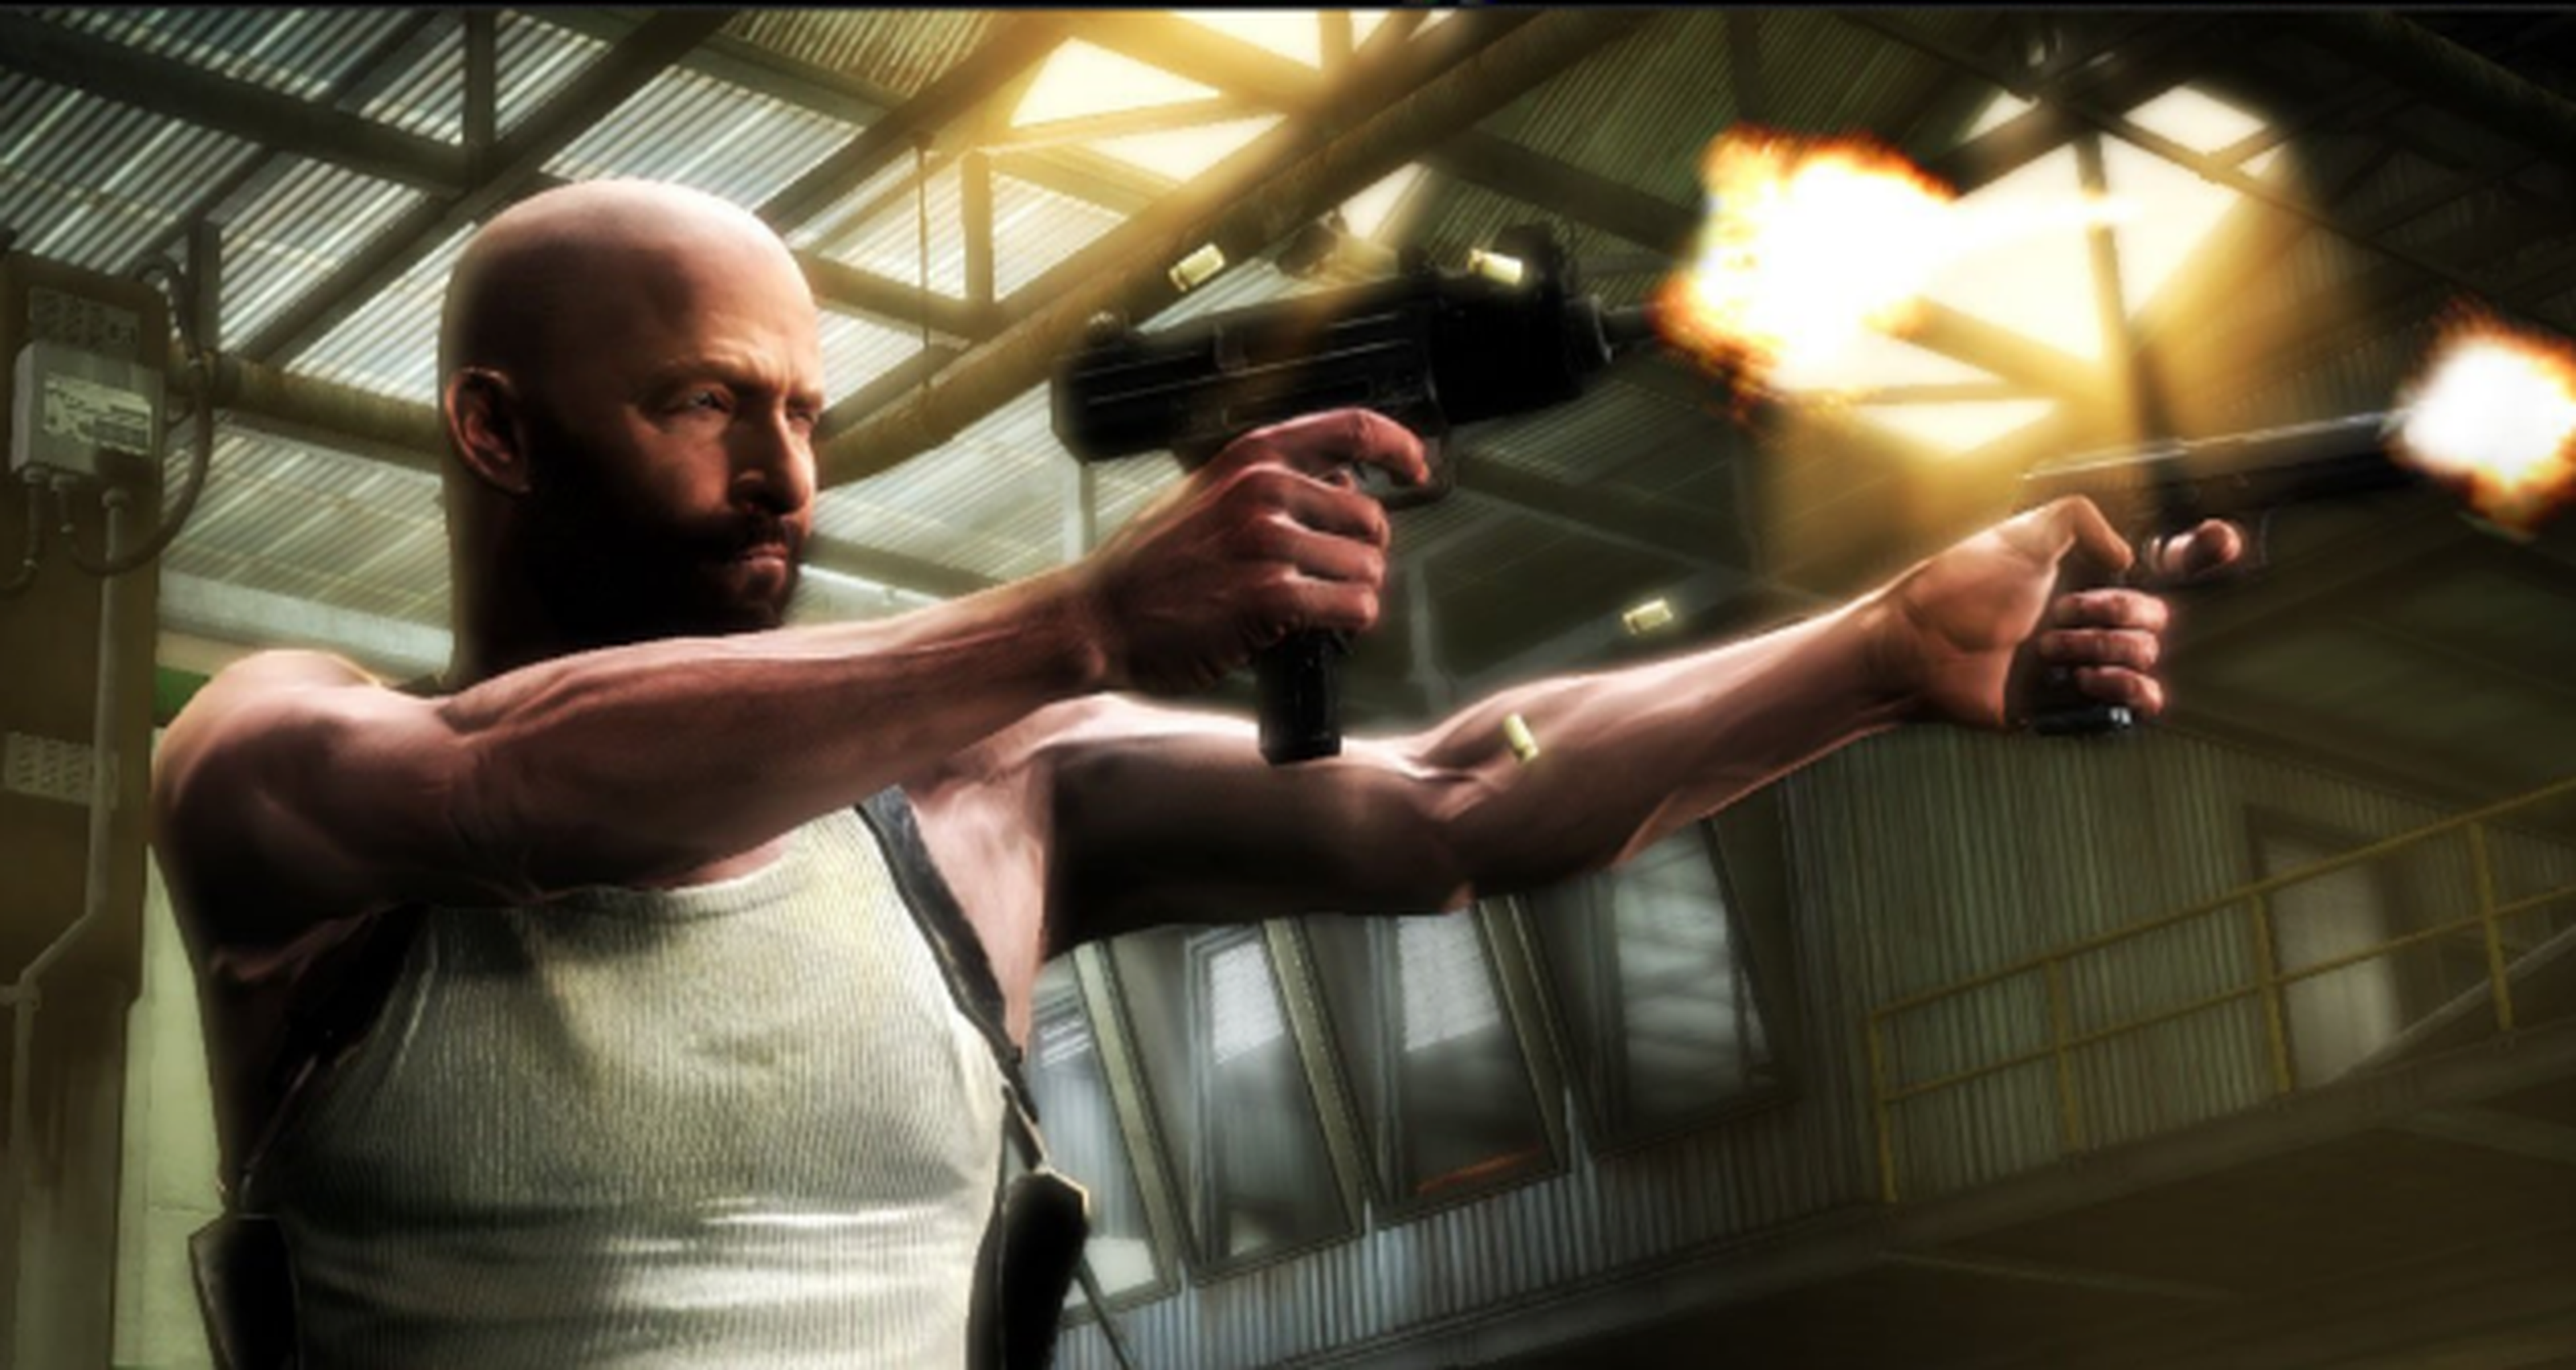 Los videojuegos violentos podrían estar relacionados con un comportamiento agresivo